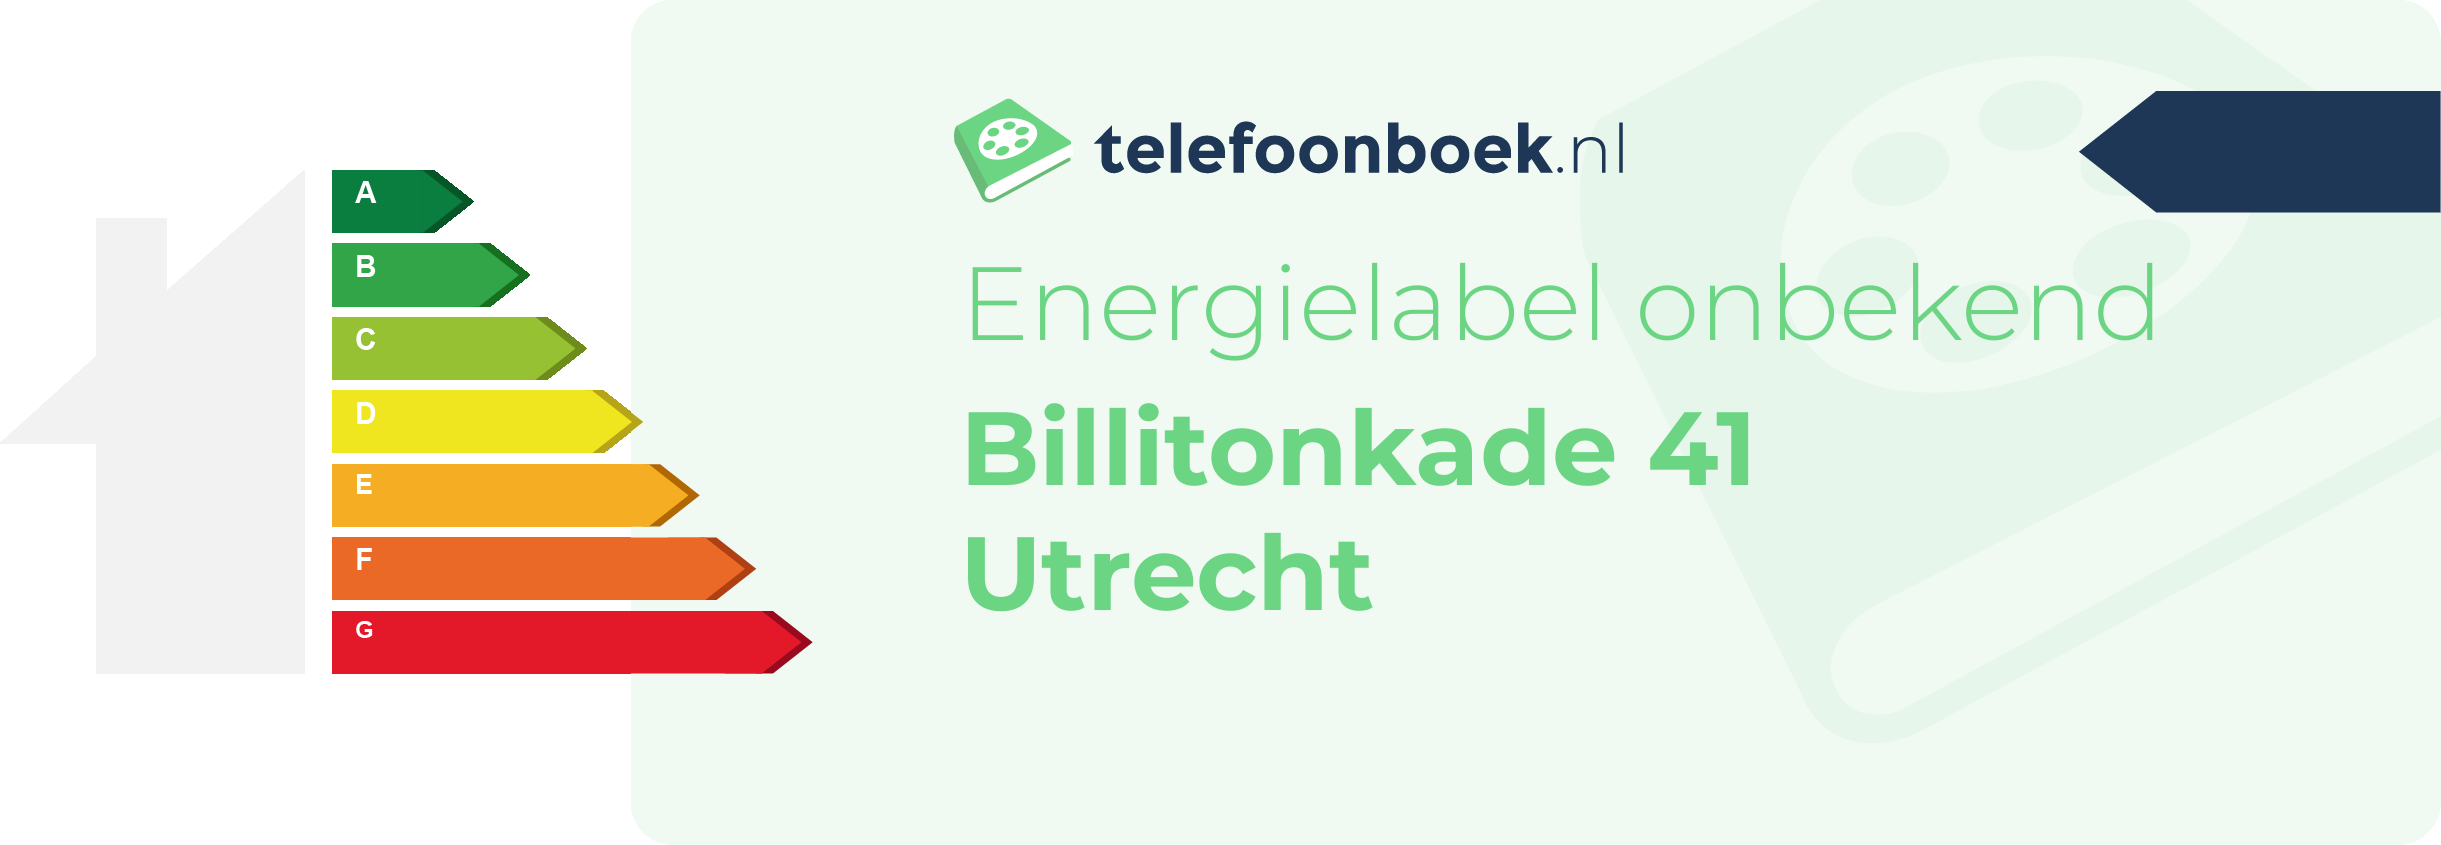 Energielabel Billitonkade 41 Utrecht